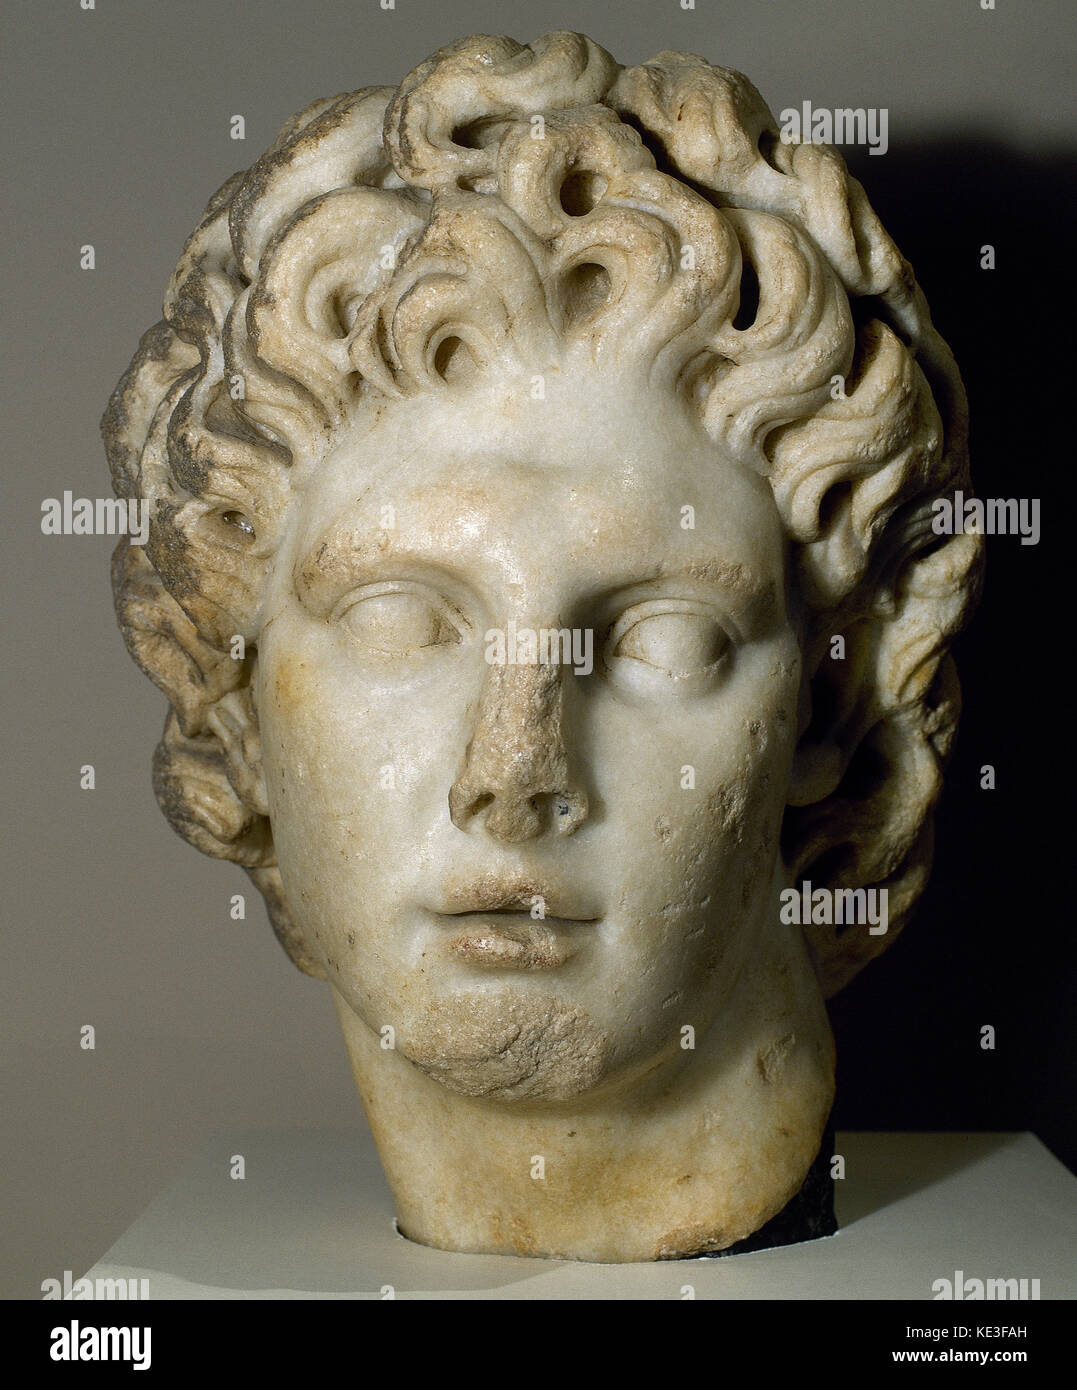 Alexander der Große, König von Makedonien (356-323 v. Chr.). argead Dynastie. 2. Büste. Das archäologische Museum von Sevilla Andalusien Spanien. Stockfoto